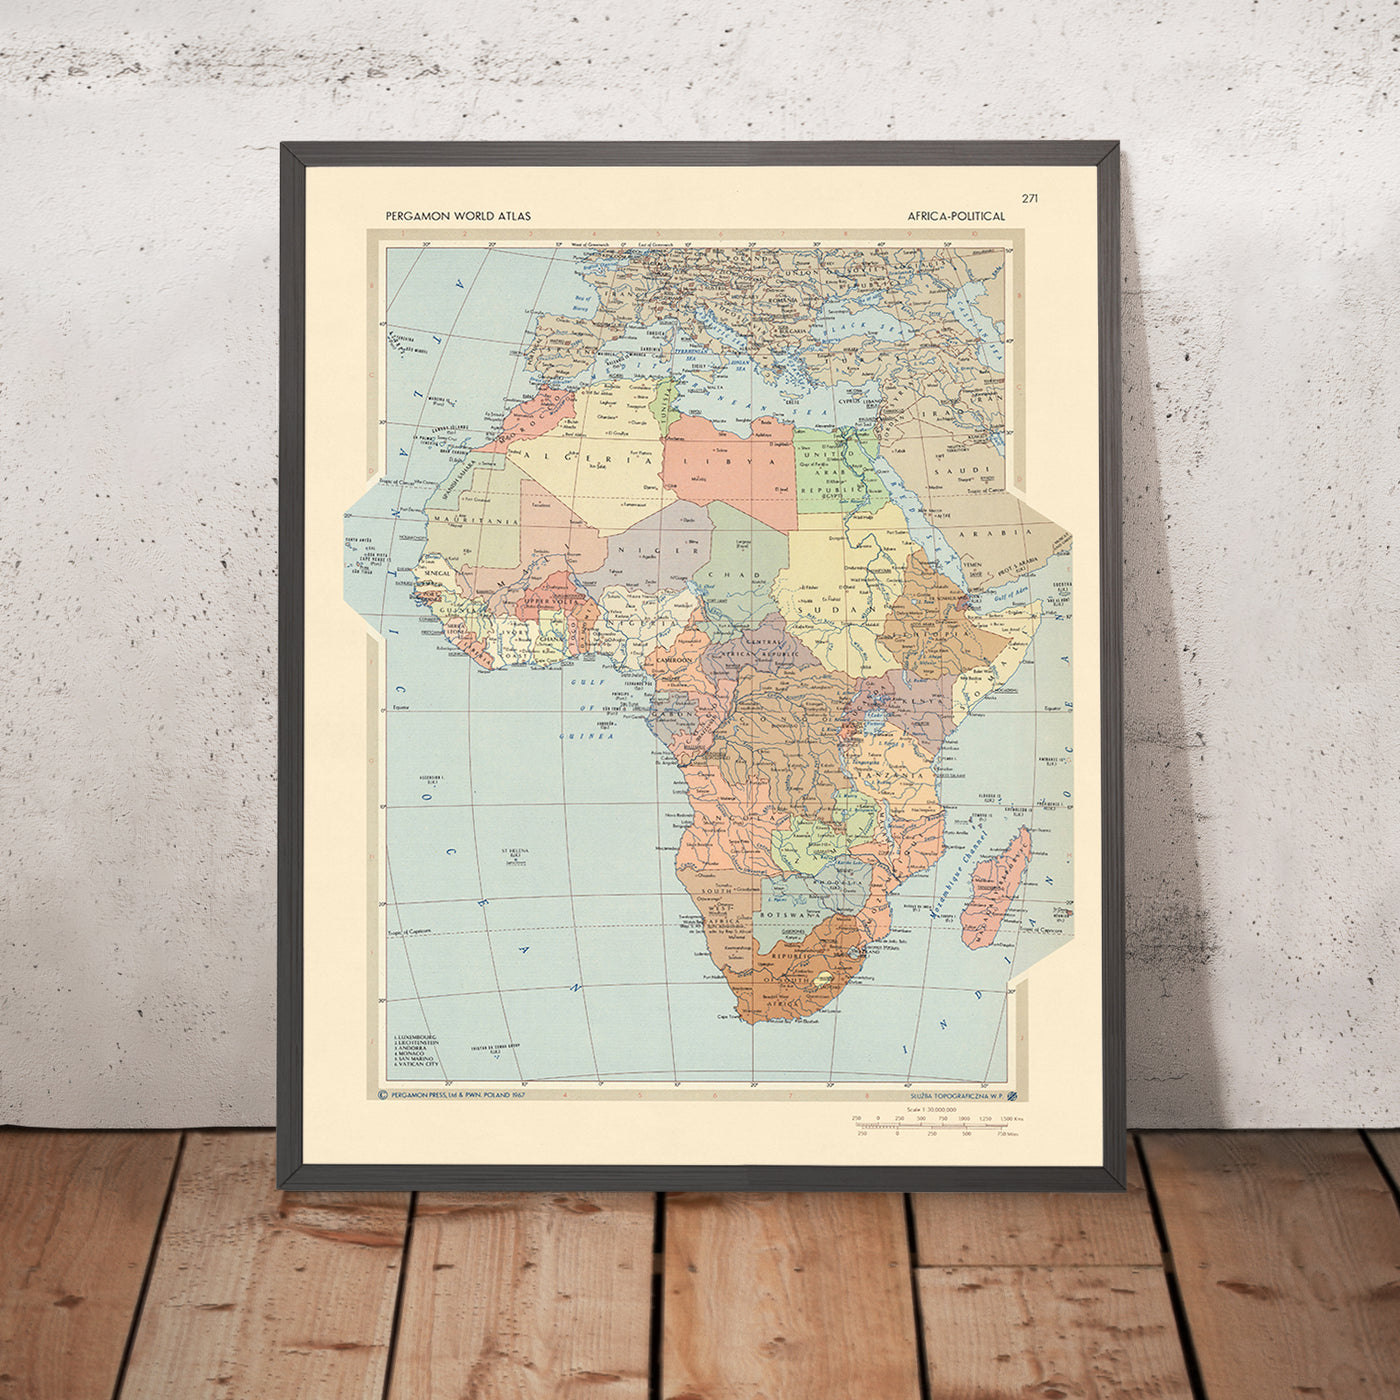 Mapa del Viejo Mundo: Mapa político de África realizado por el Servicio de Topografía del Ejército Polaco, 1967: Una instantánea del clima geopolítico, estilo artístico detallado y proyección cartográfica precisa